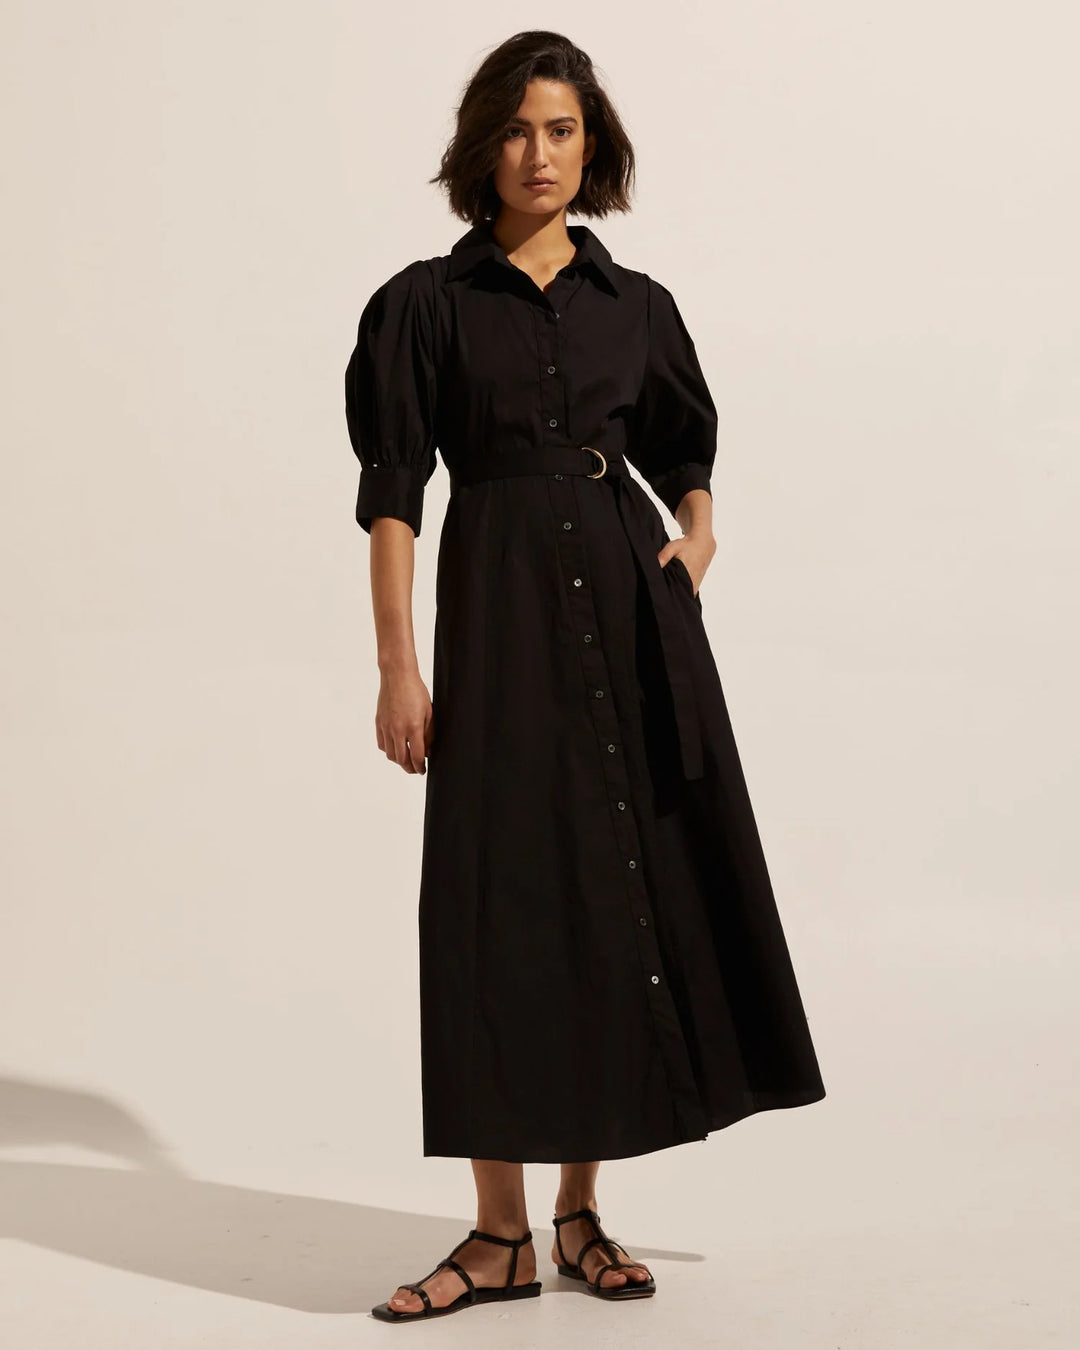 Favour Dress - Black Dresses Zoe Kratzmann   